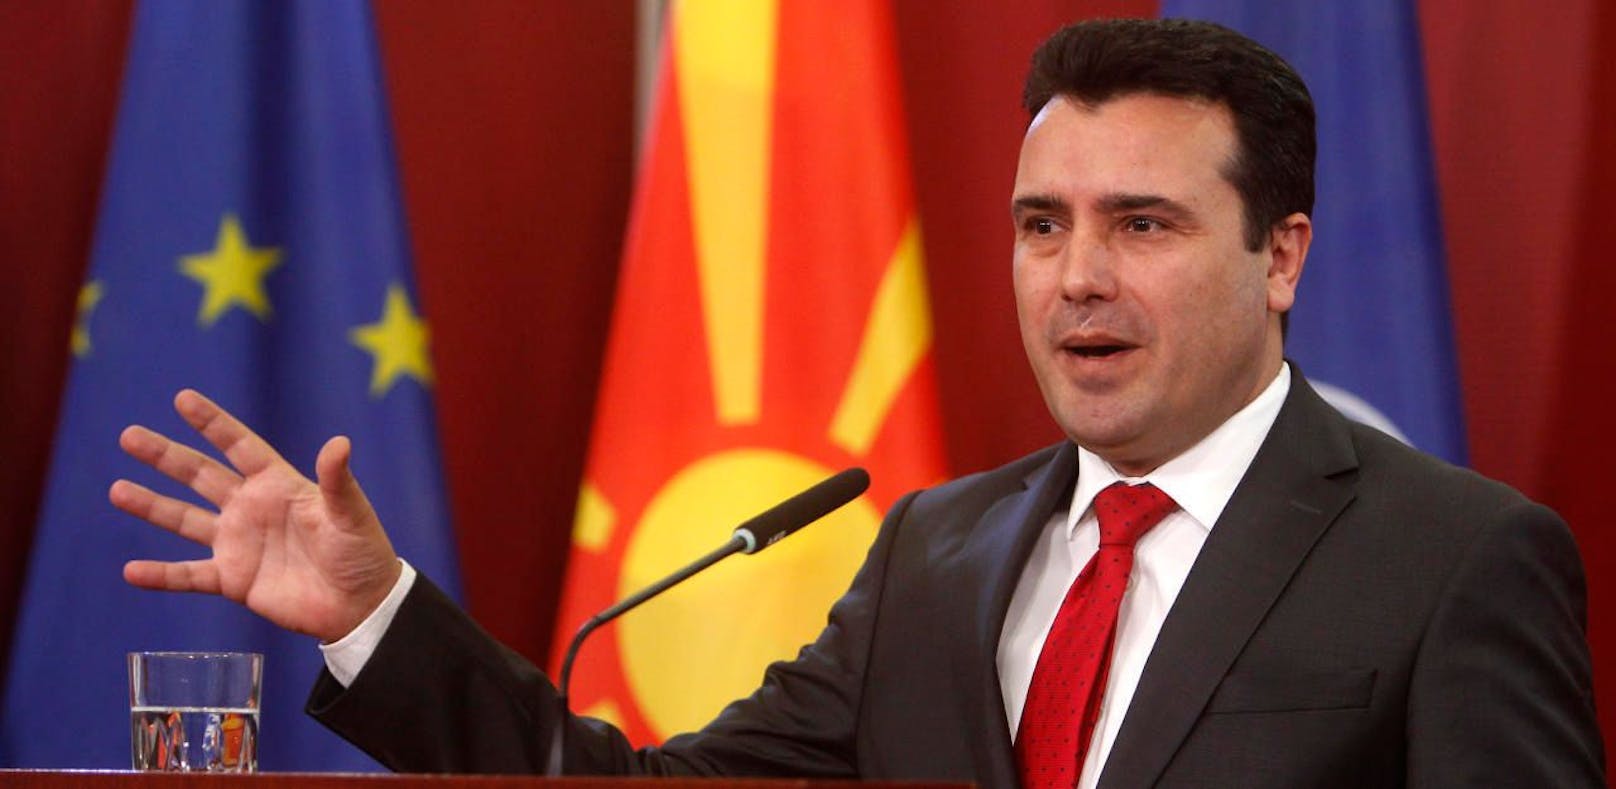 Mazedonien ändert nun definitiv den Namen